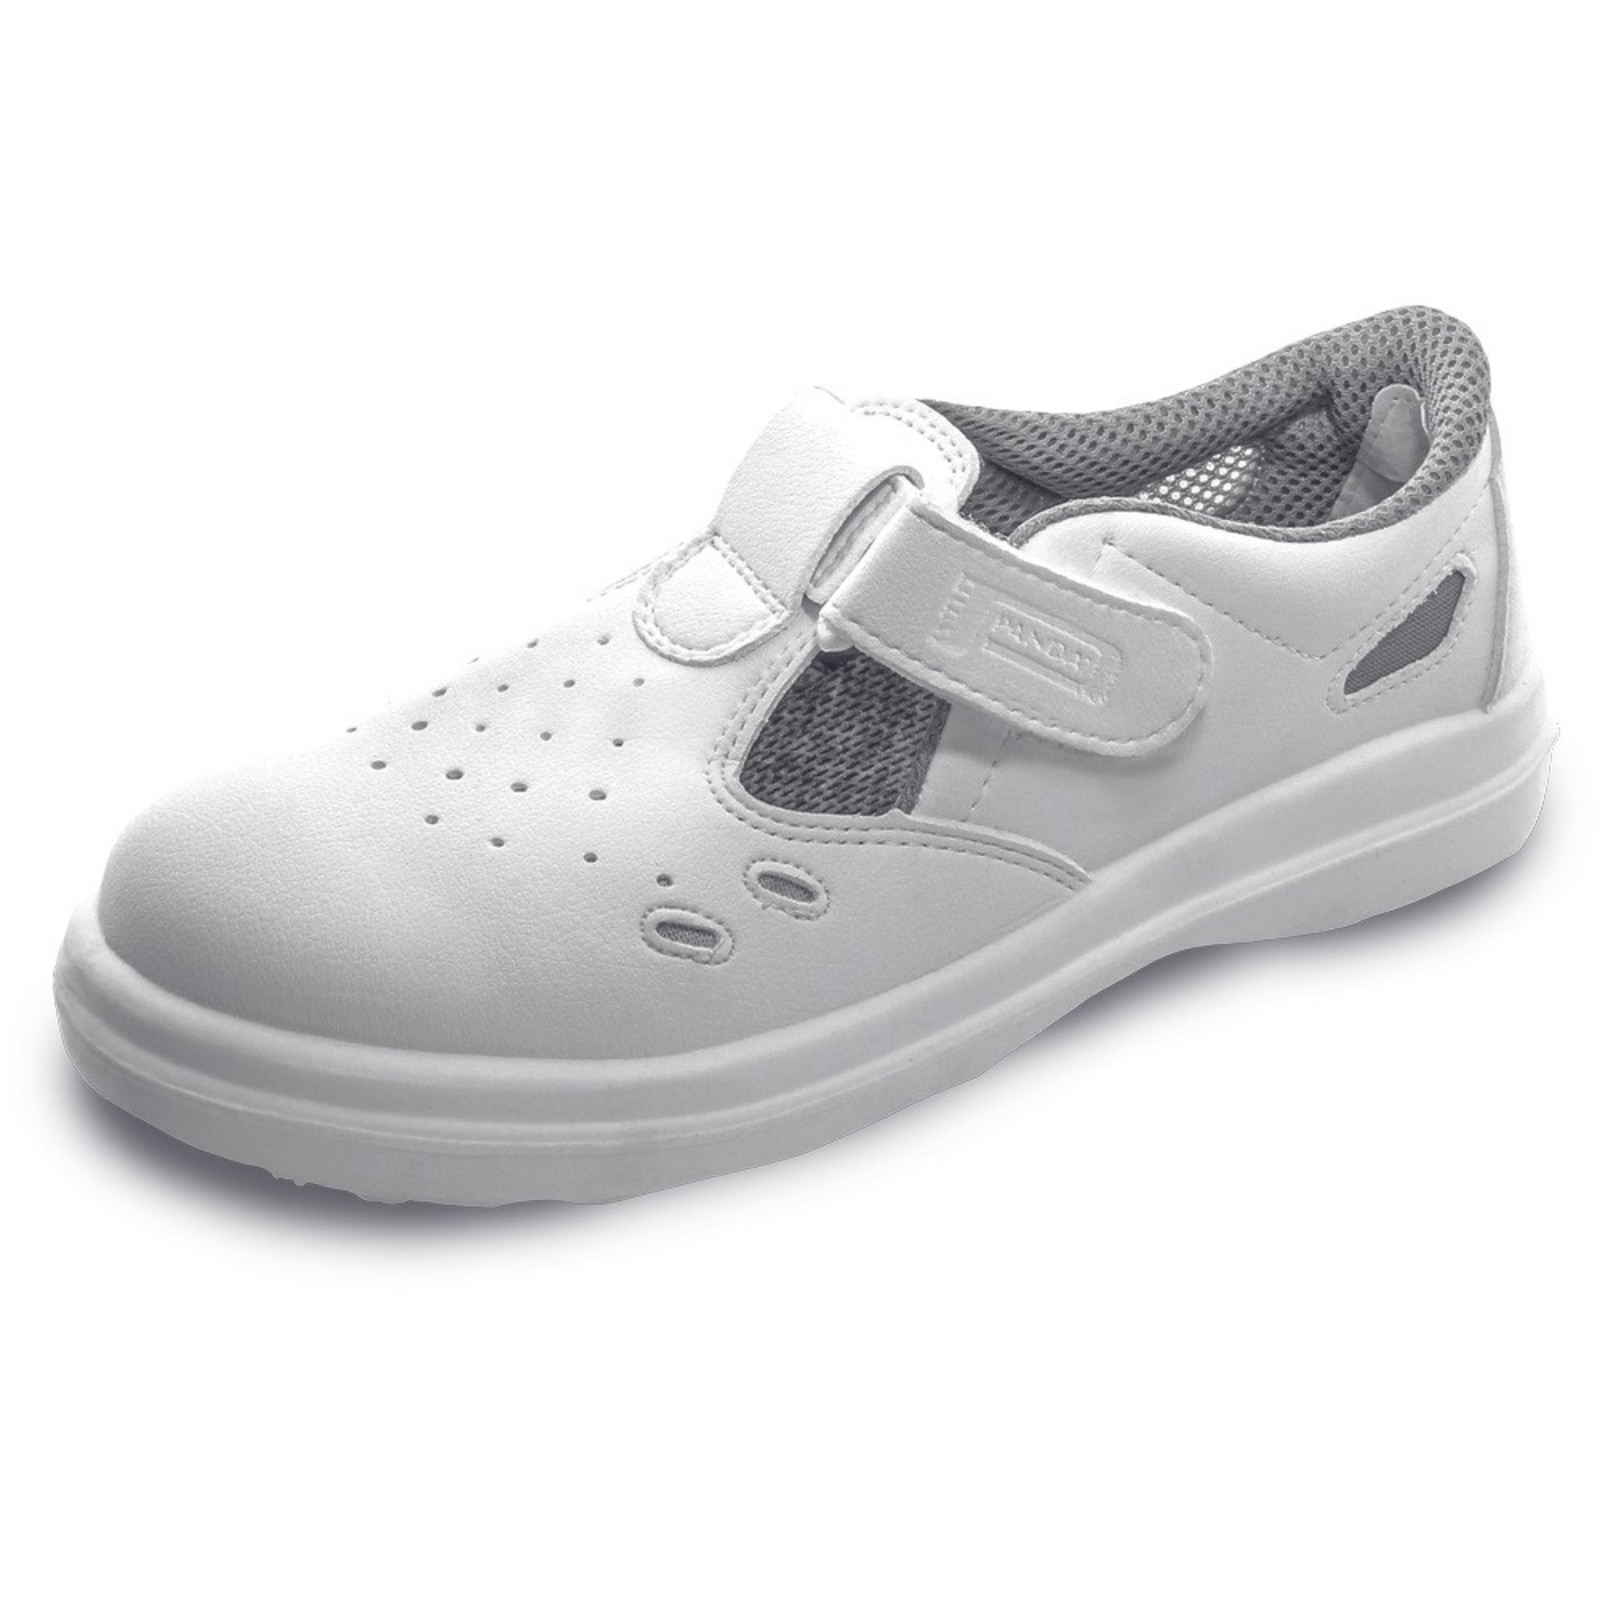 Bezpečnostné sandále Panda Sanitary Lybra S1 SRC - veľkosť: 44, farba: biela